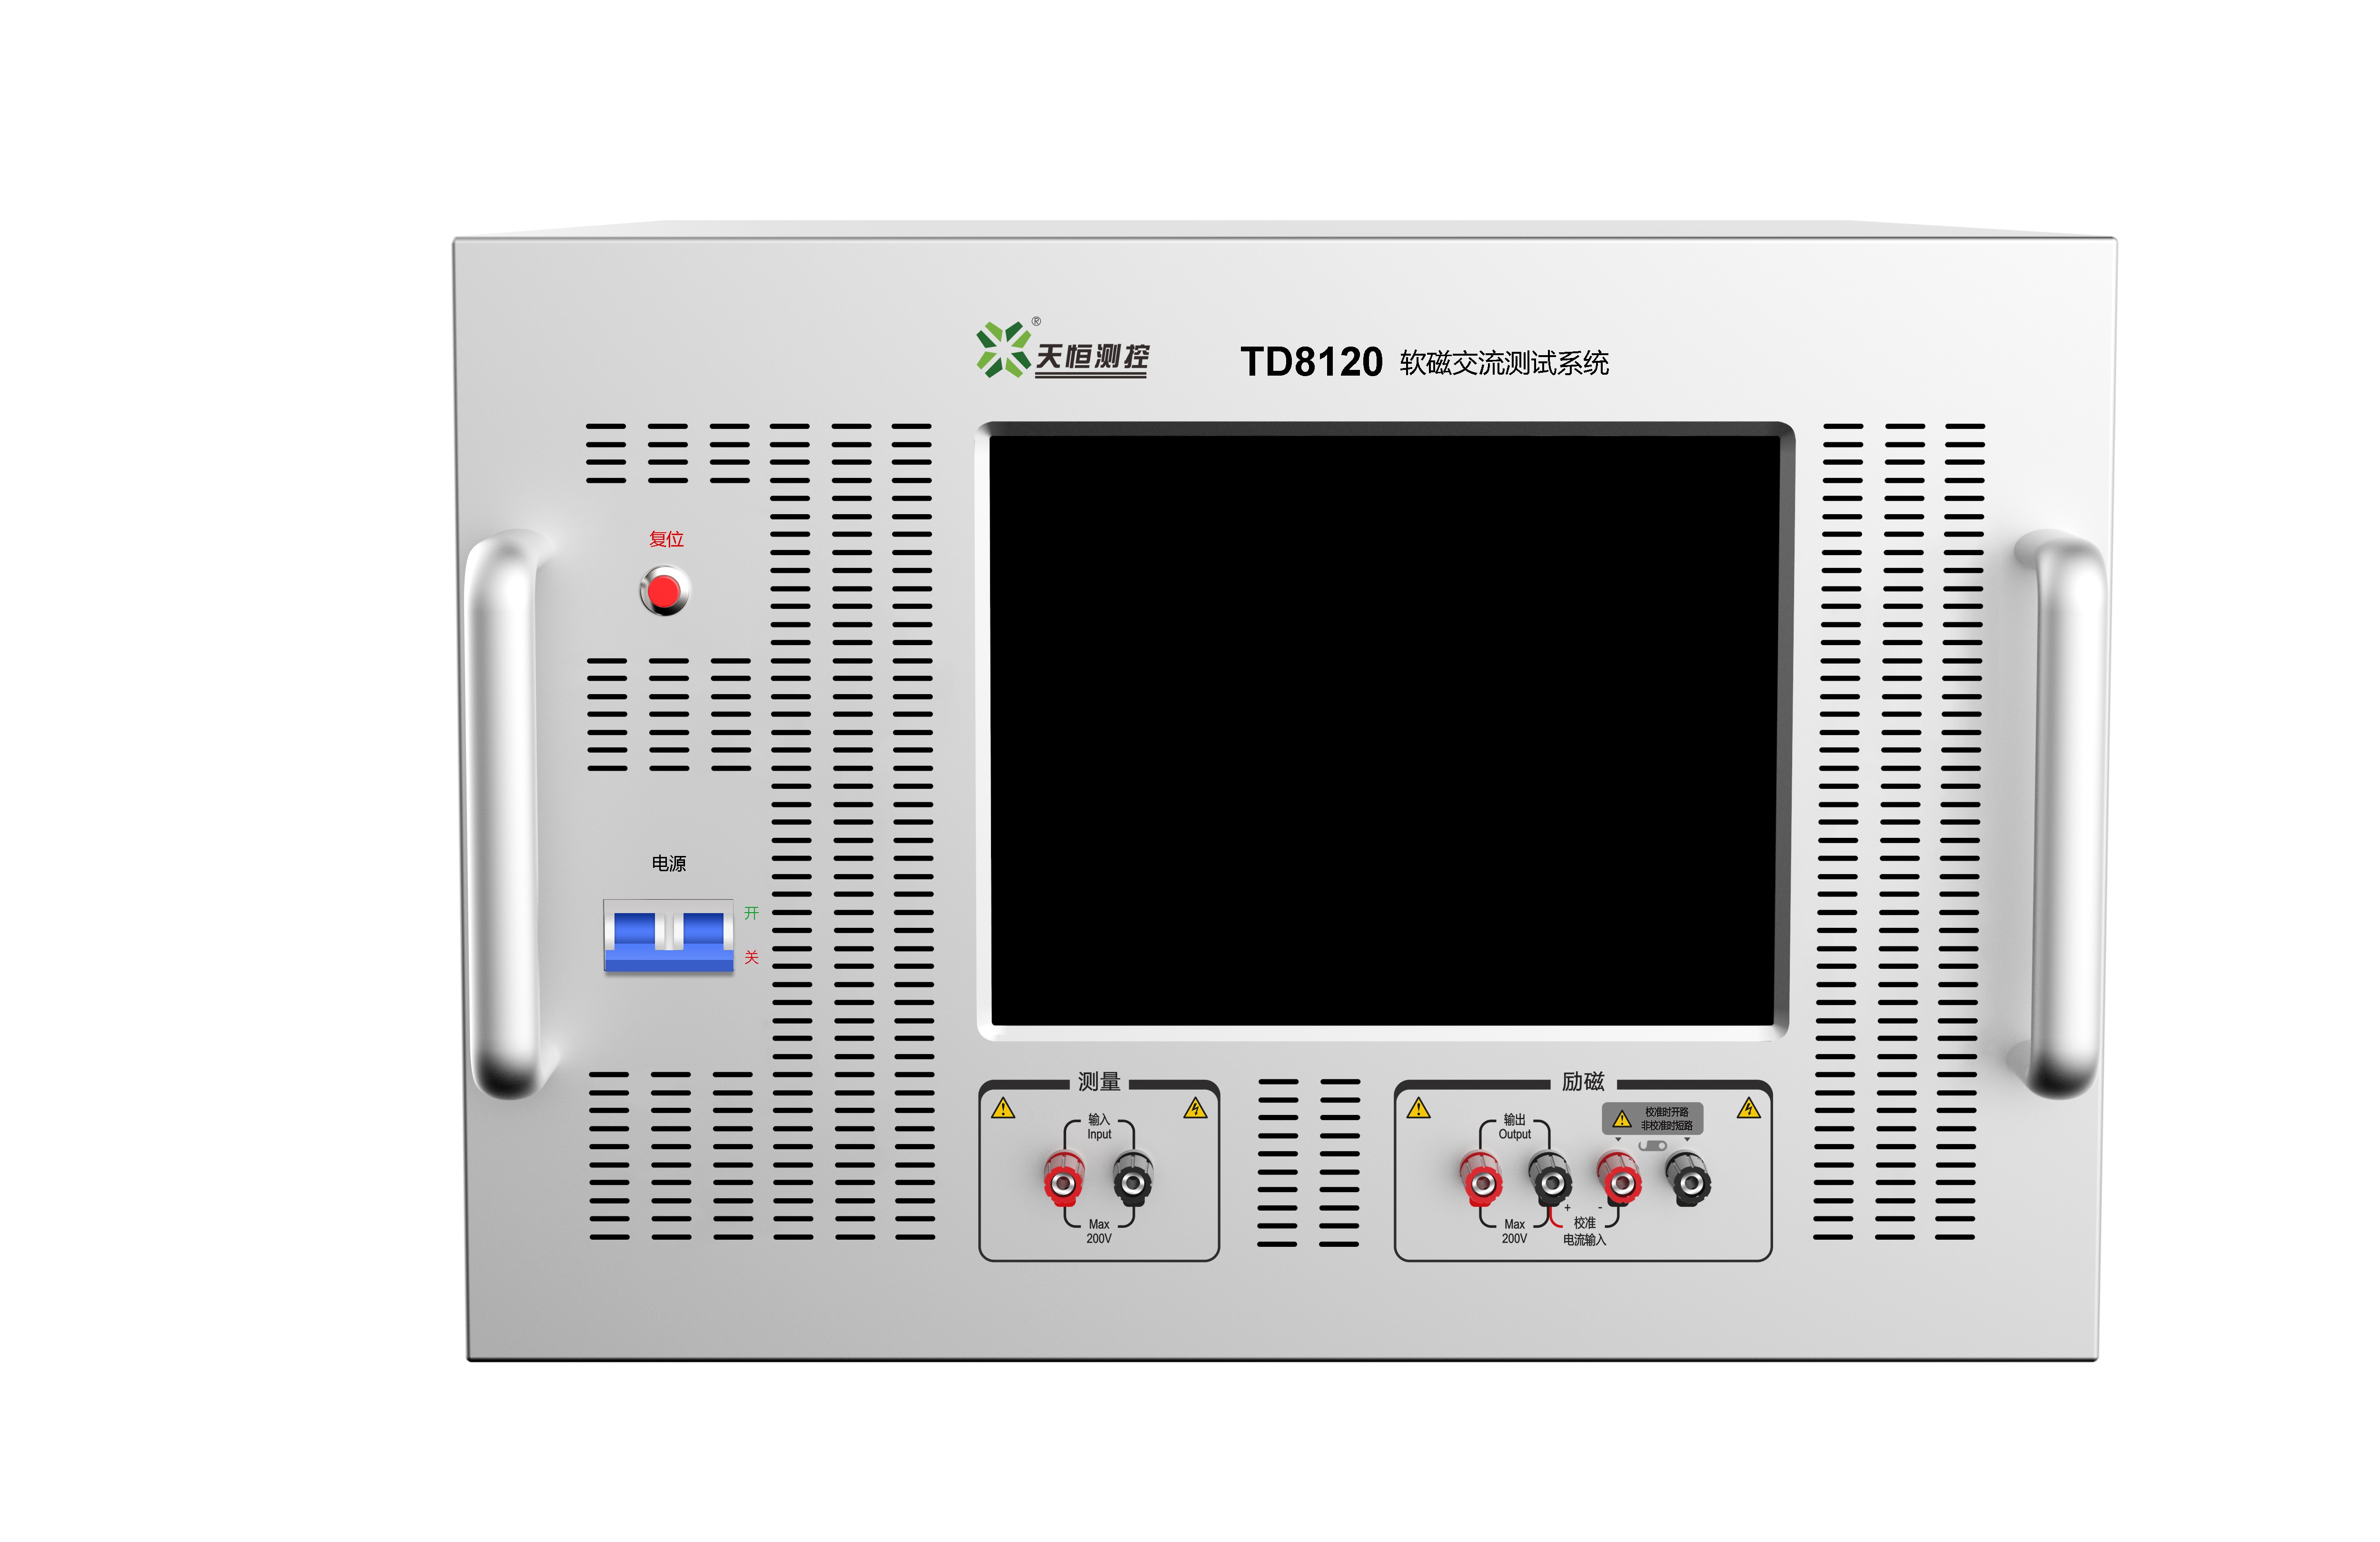 연자성 재료용 TD81 시리즈 AC 자기 특성 측정 시스템